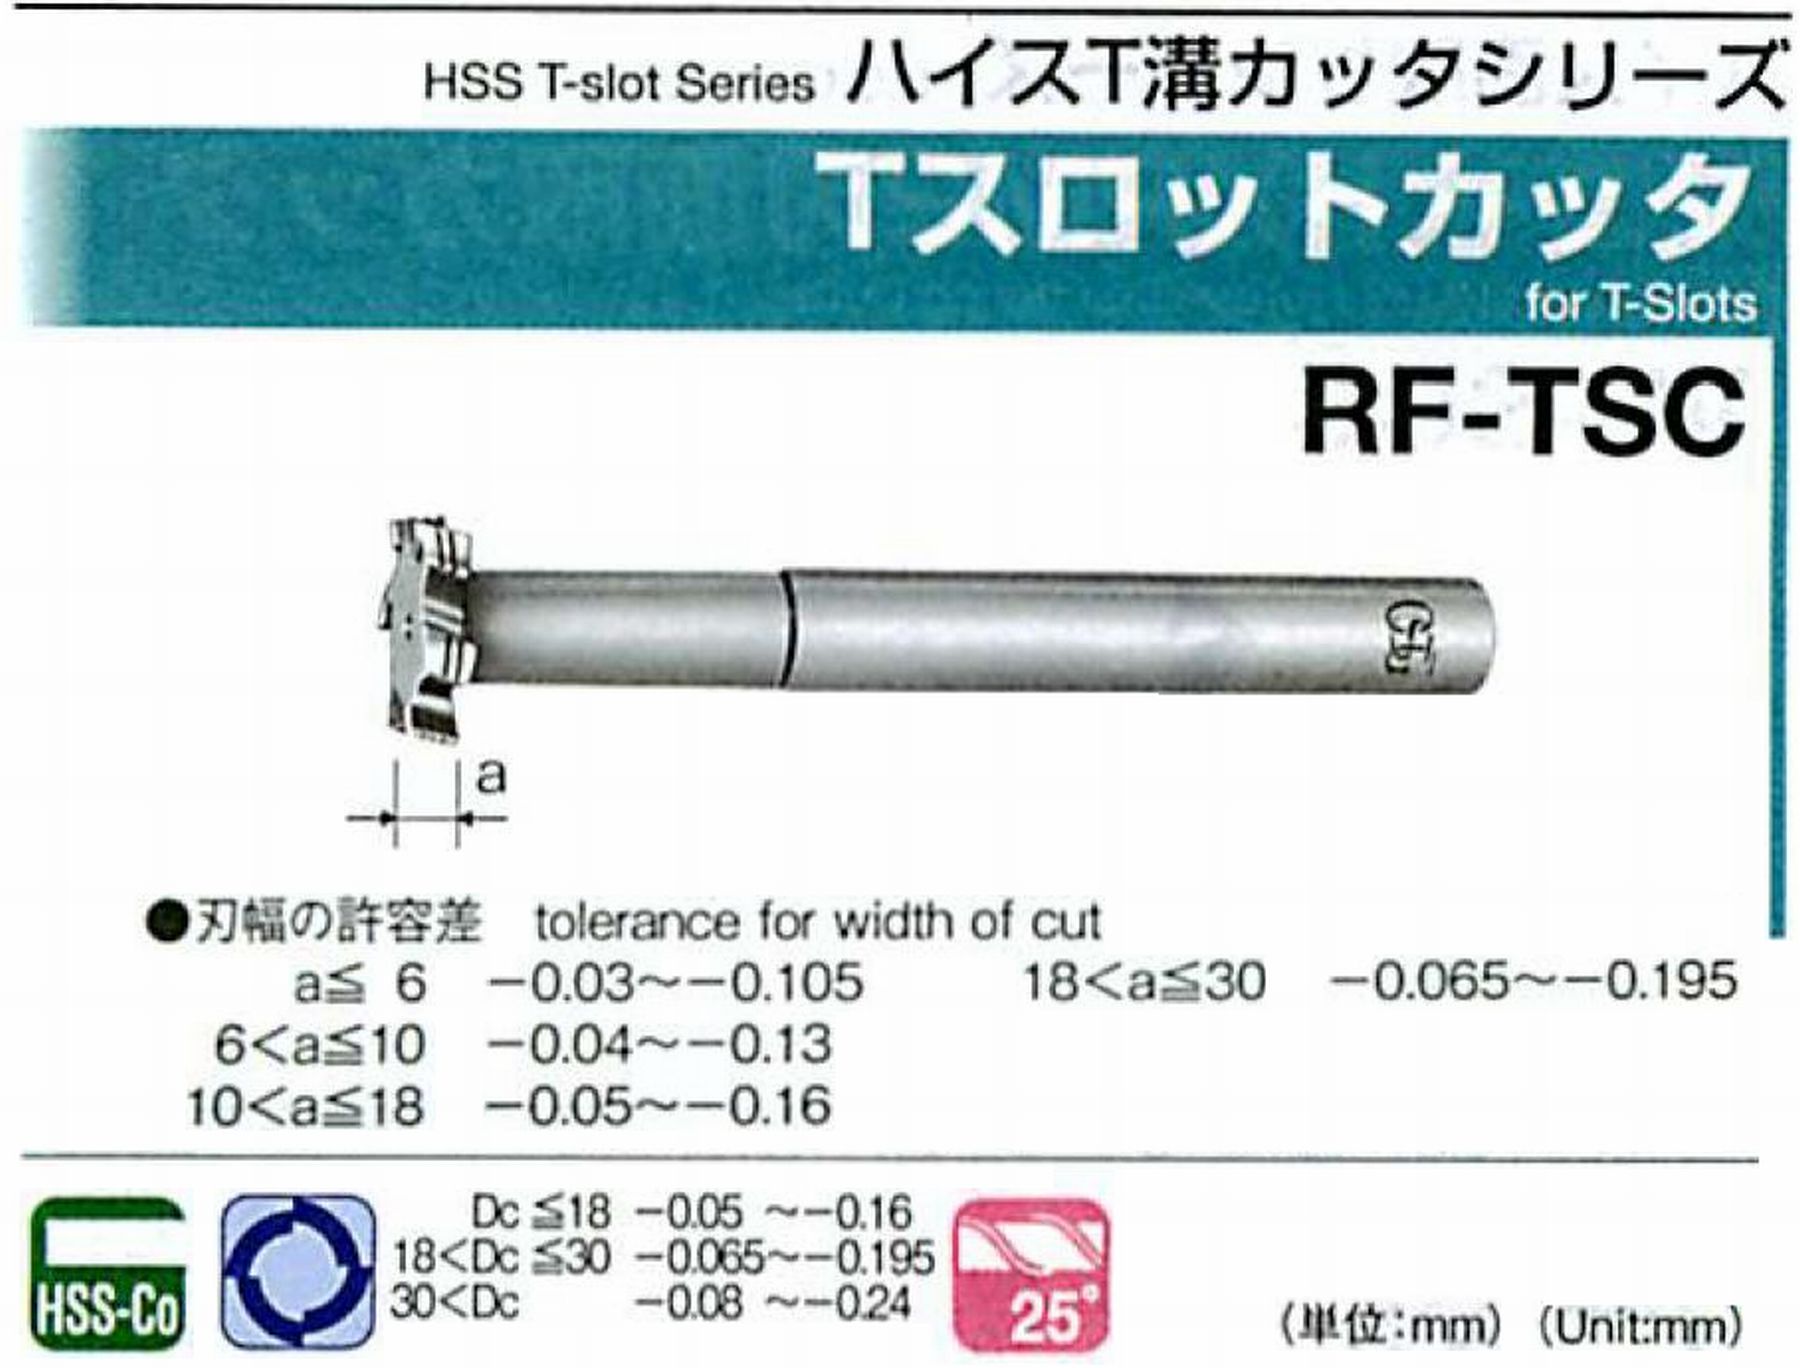 オーエスジー/OSG Tスロットカッタ RF-TSC 外径40 刃幅7 全長165 シャンク径20mm 首下長62 首径19.6 刃数6